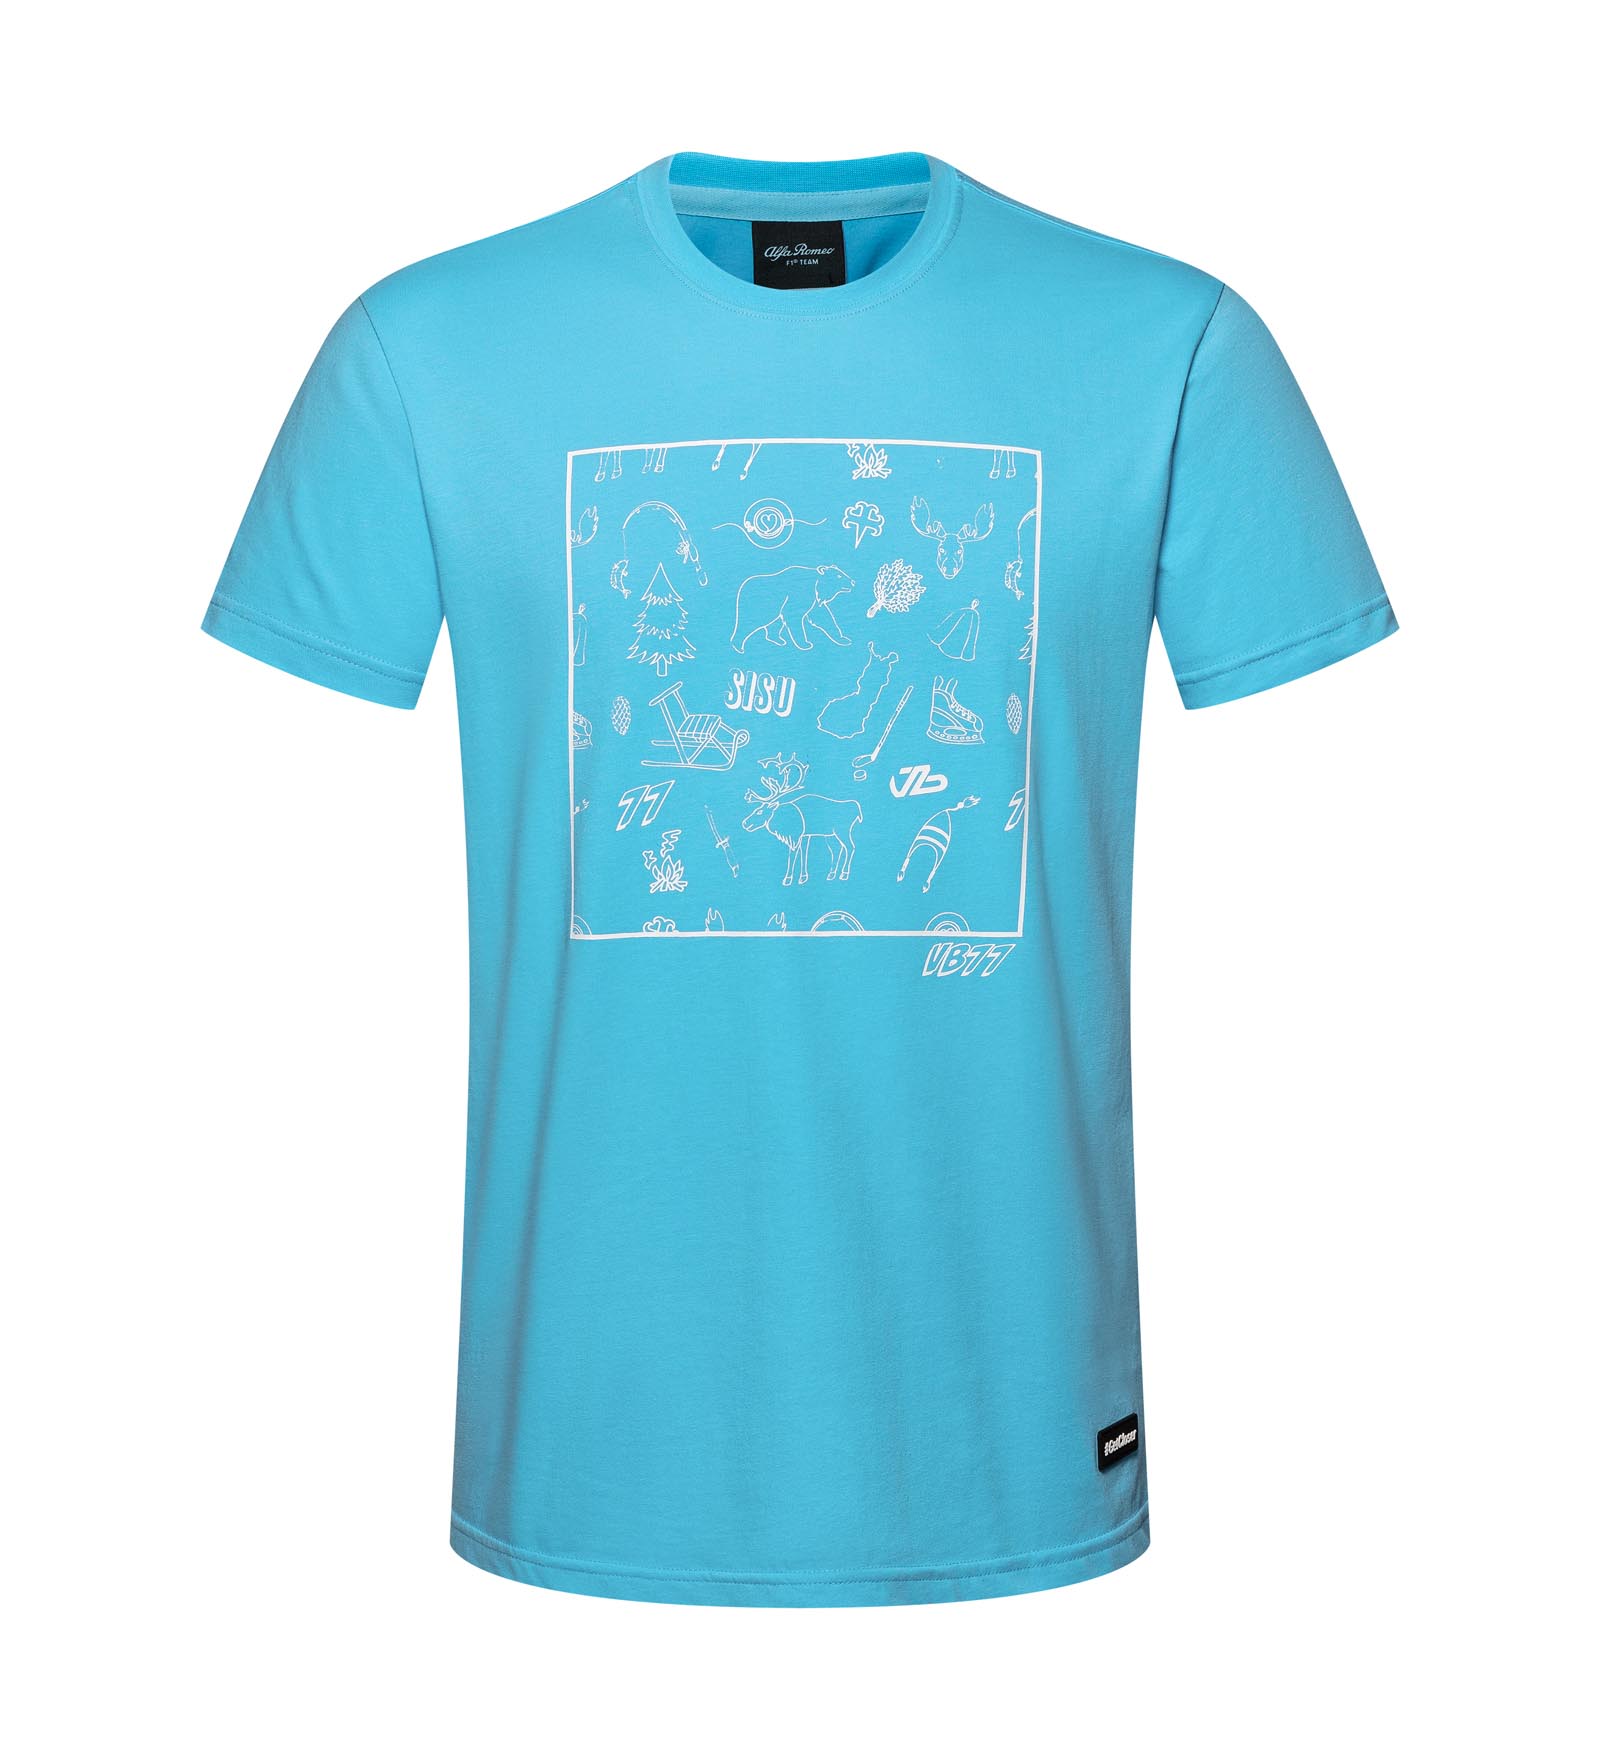 T-Shirt #TeamBottas Blau L Valtteri Bottas